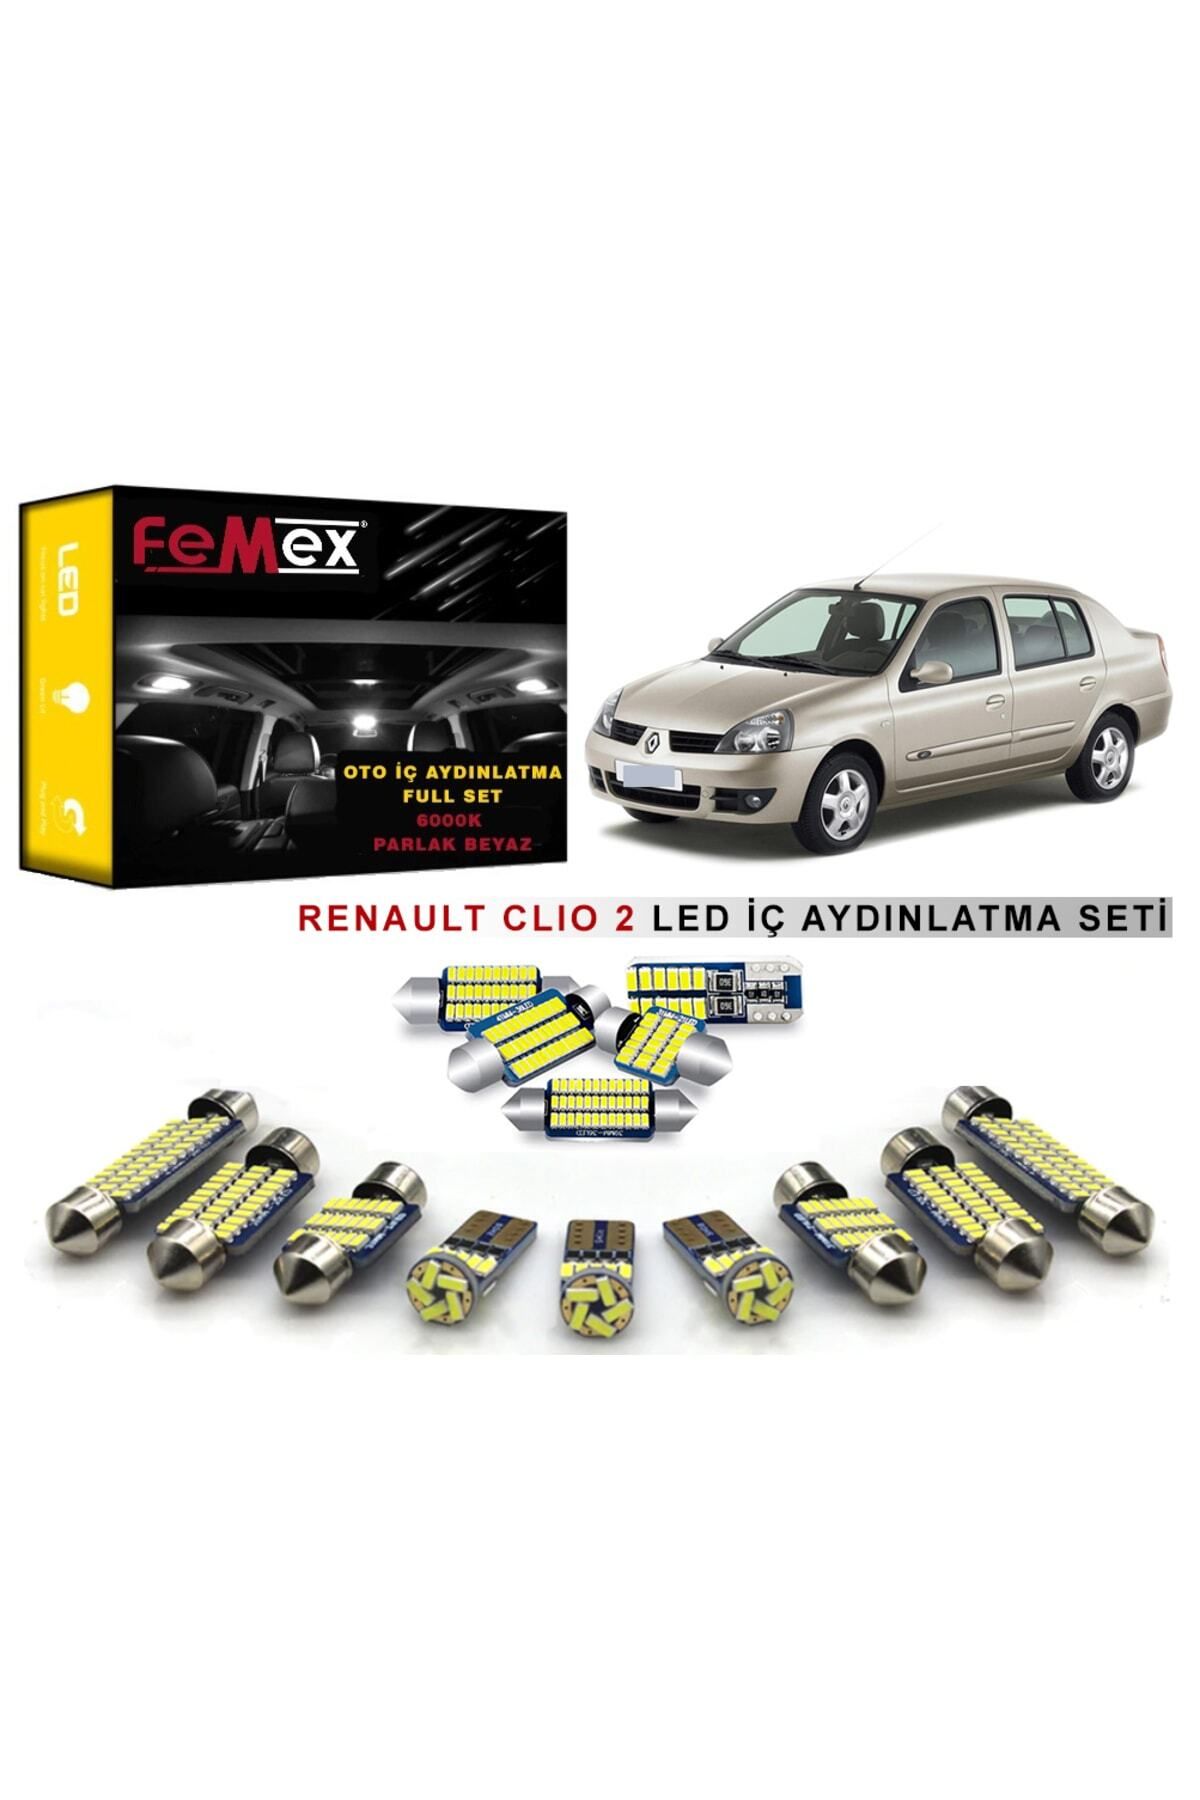 FEMEX Renault Clio 2 Led Iç Aydınlatma Ampul Seti Parlak Beyaz